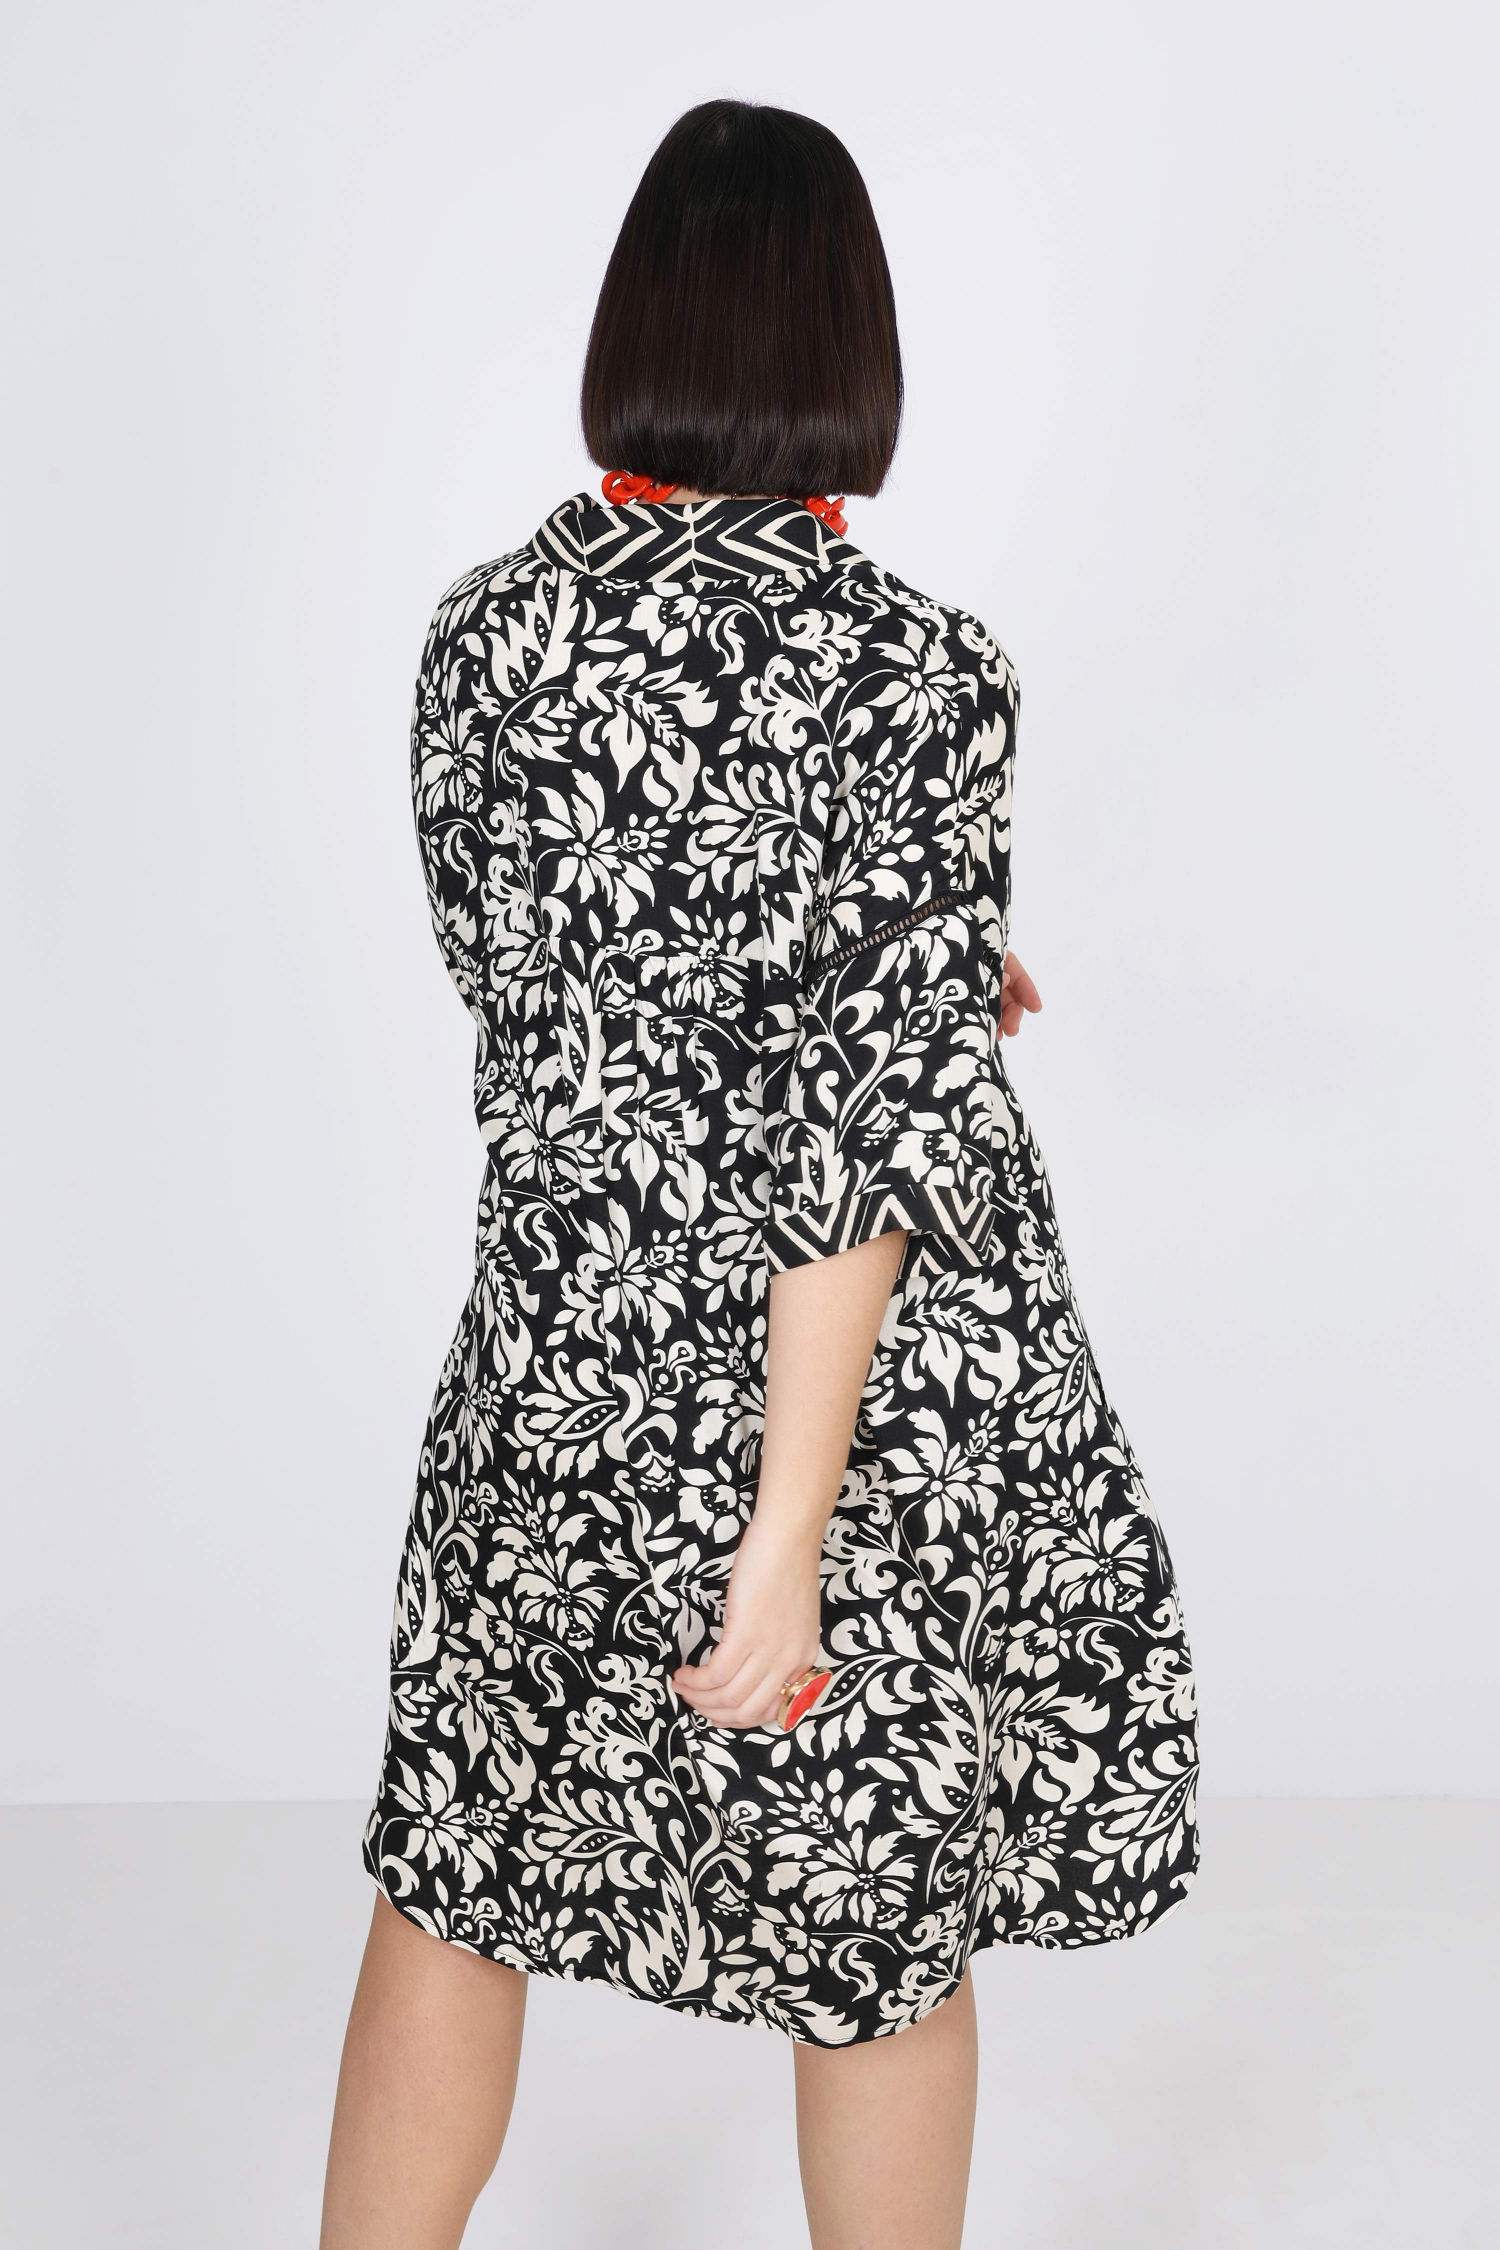 Black/white floral print dress